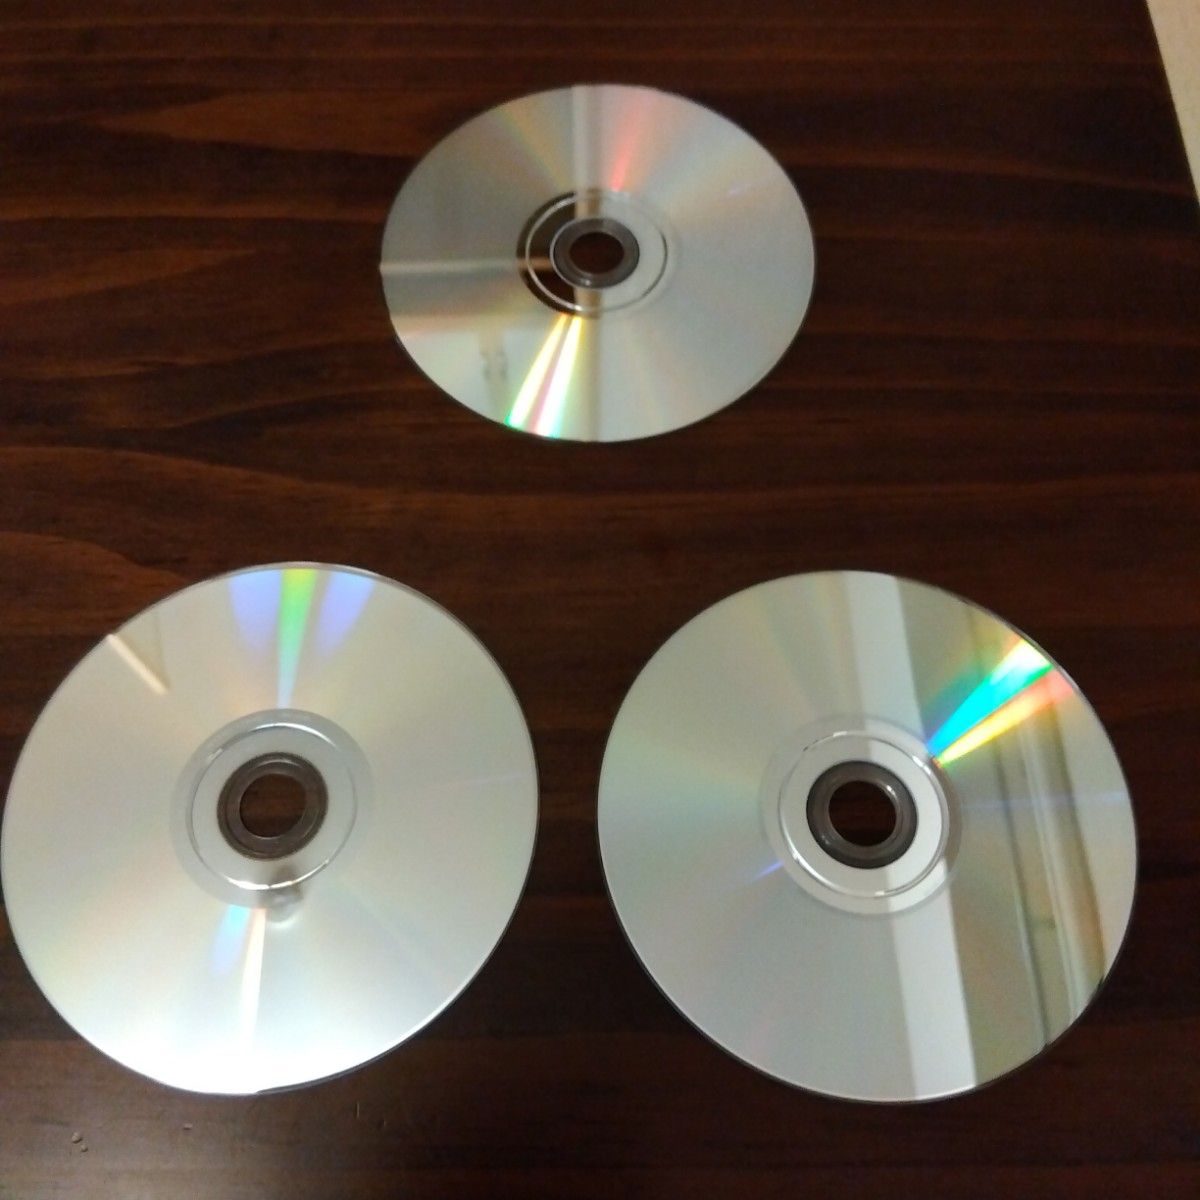 【Wii】 ゼルダの伝説  スカイウォードソード スペシャルCD付き、トワイライトプリンセス 2本セット